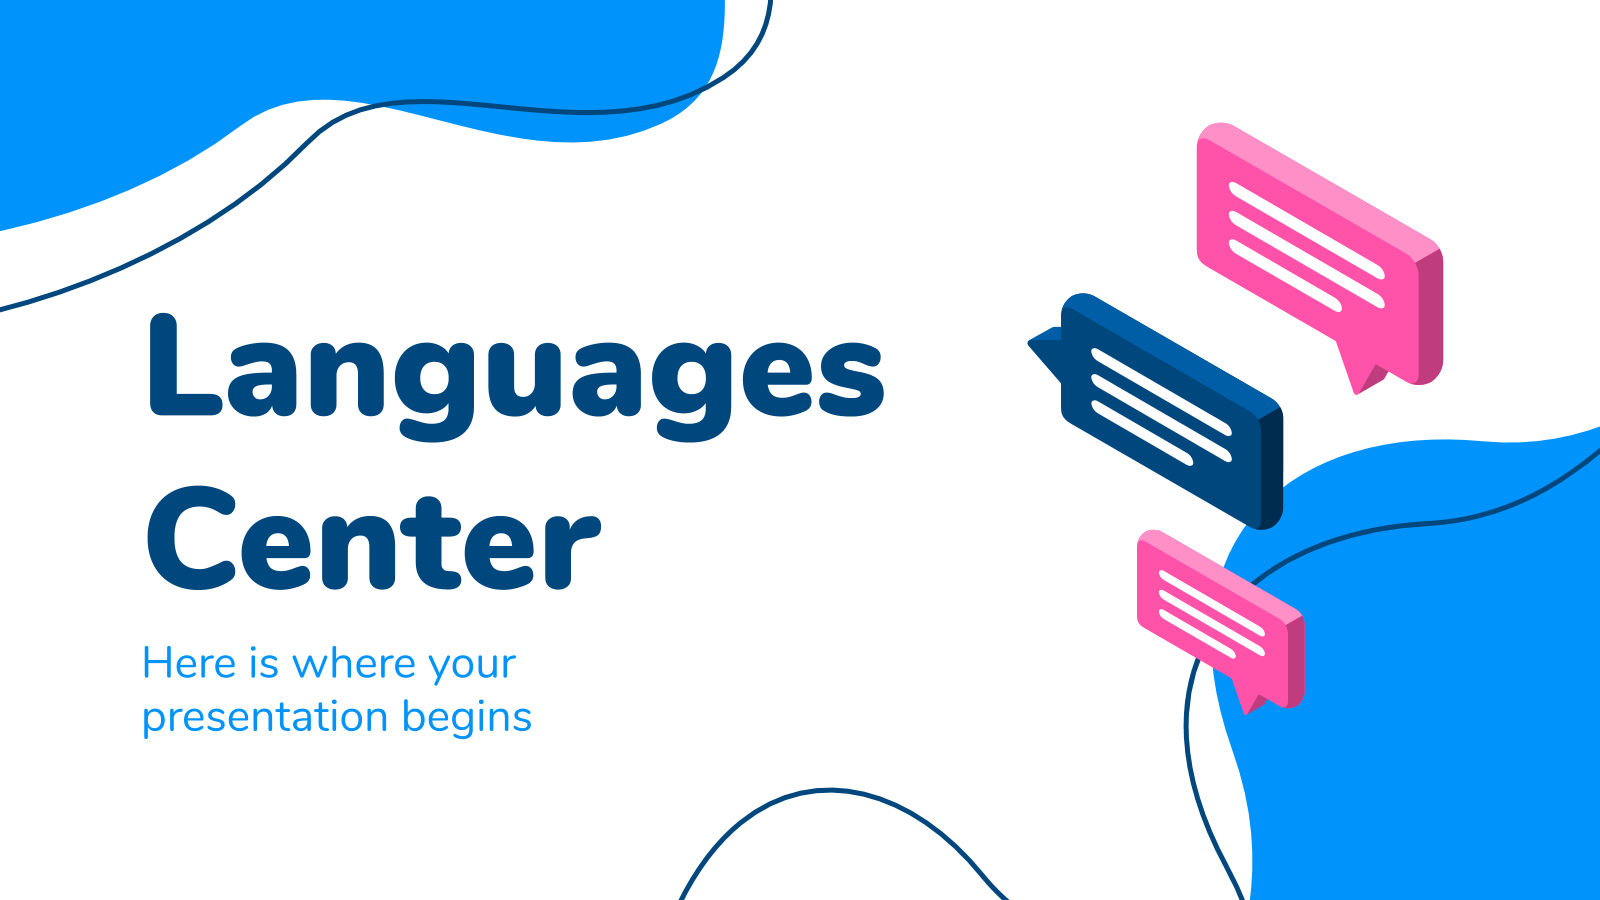 1-languages-center